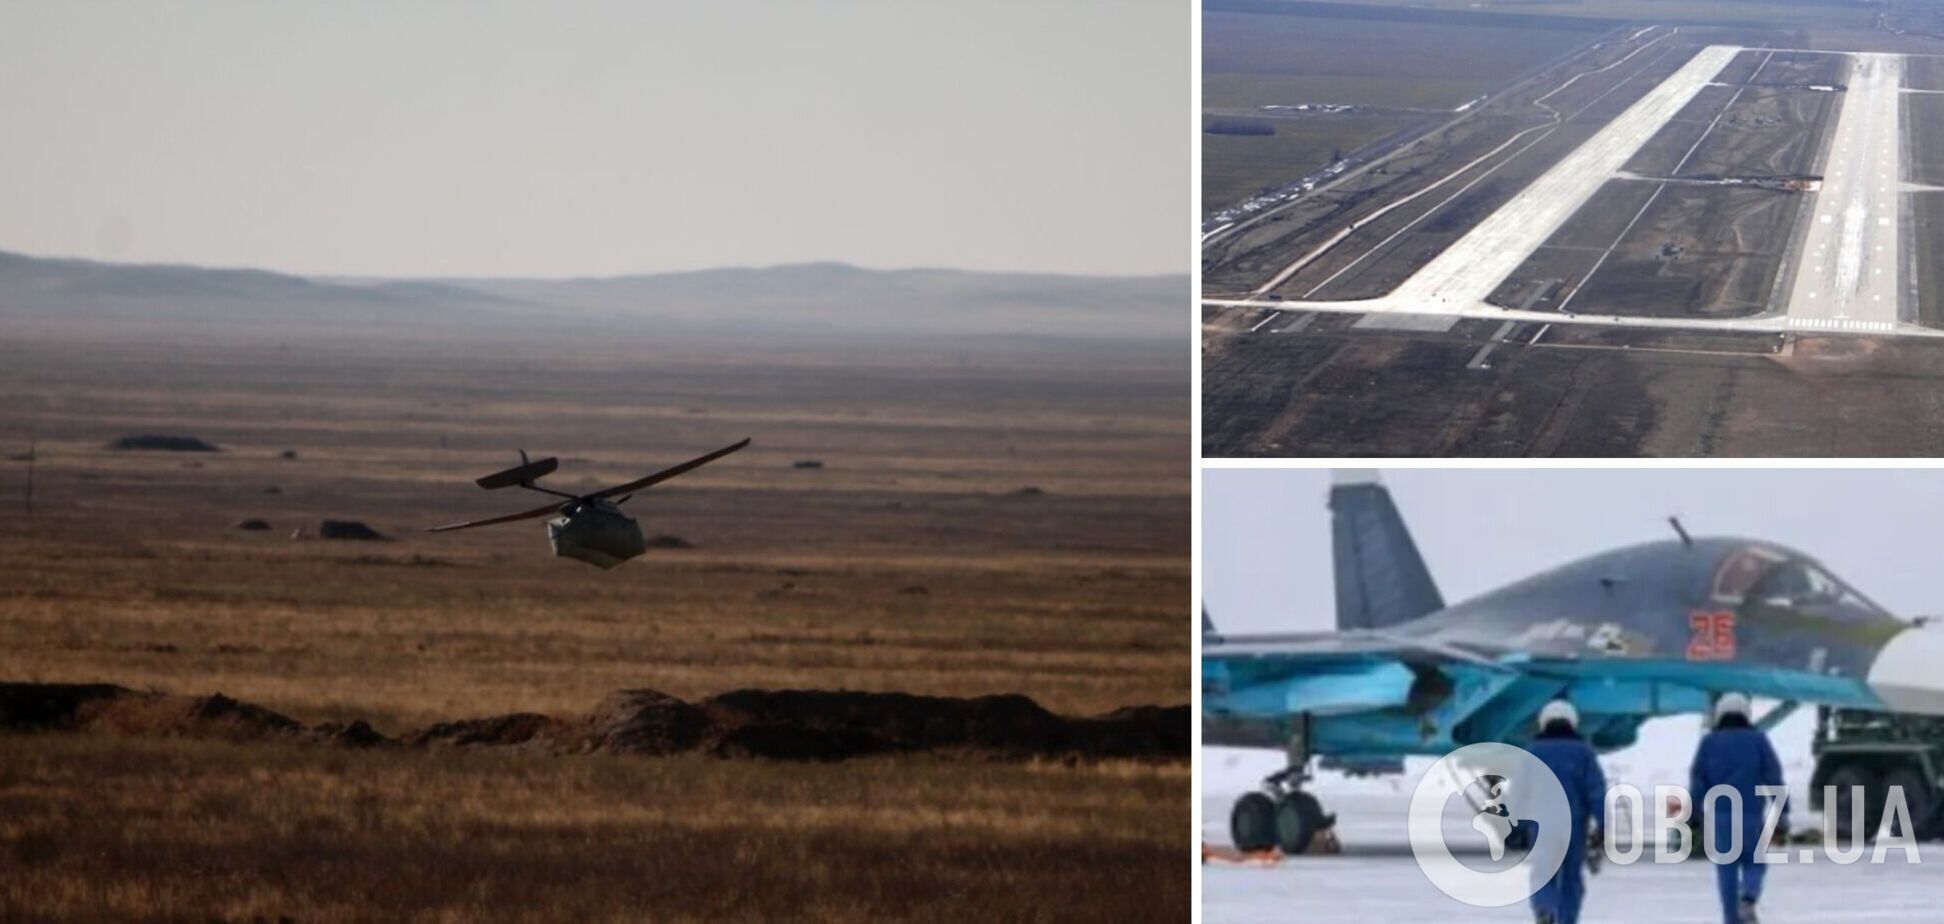 БПЛА атаковал авиабазу 'Энгельс' в Саратовской области, которую войска РФ использовали для ударов по Украине: повреждены самолеты